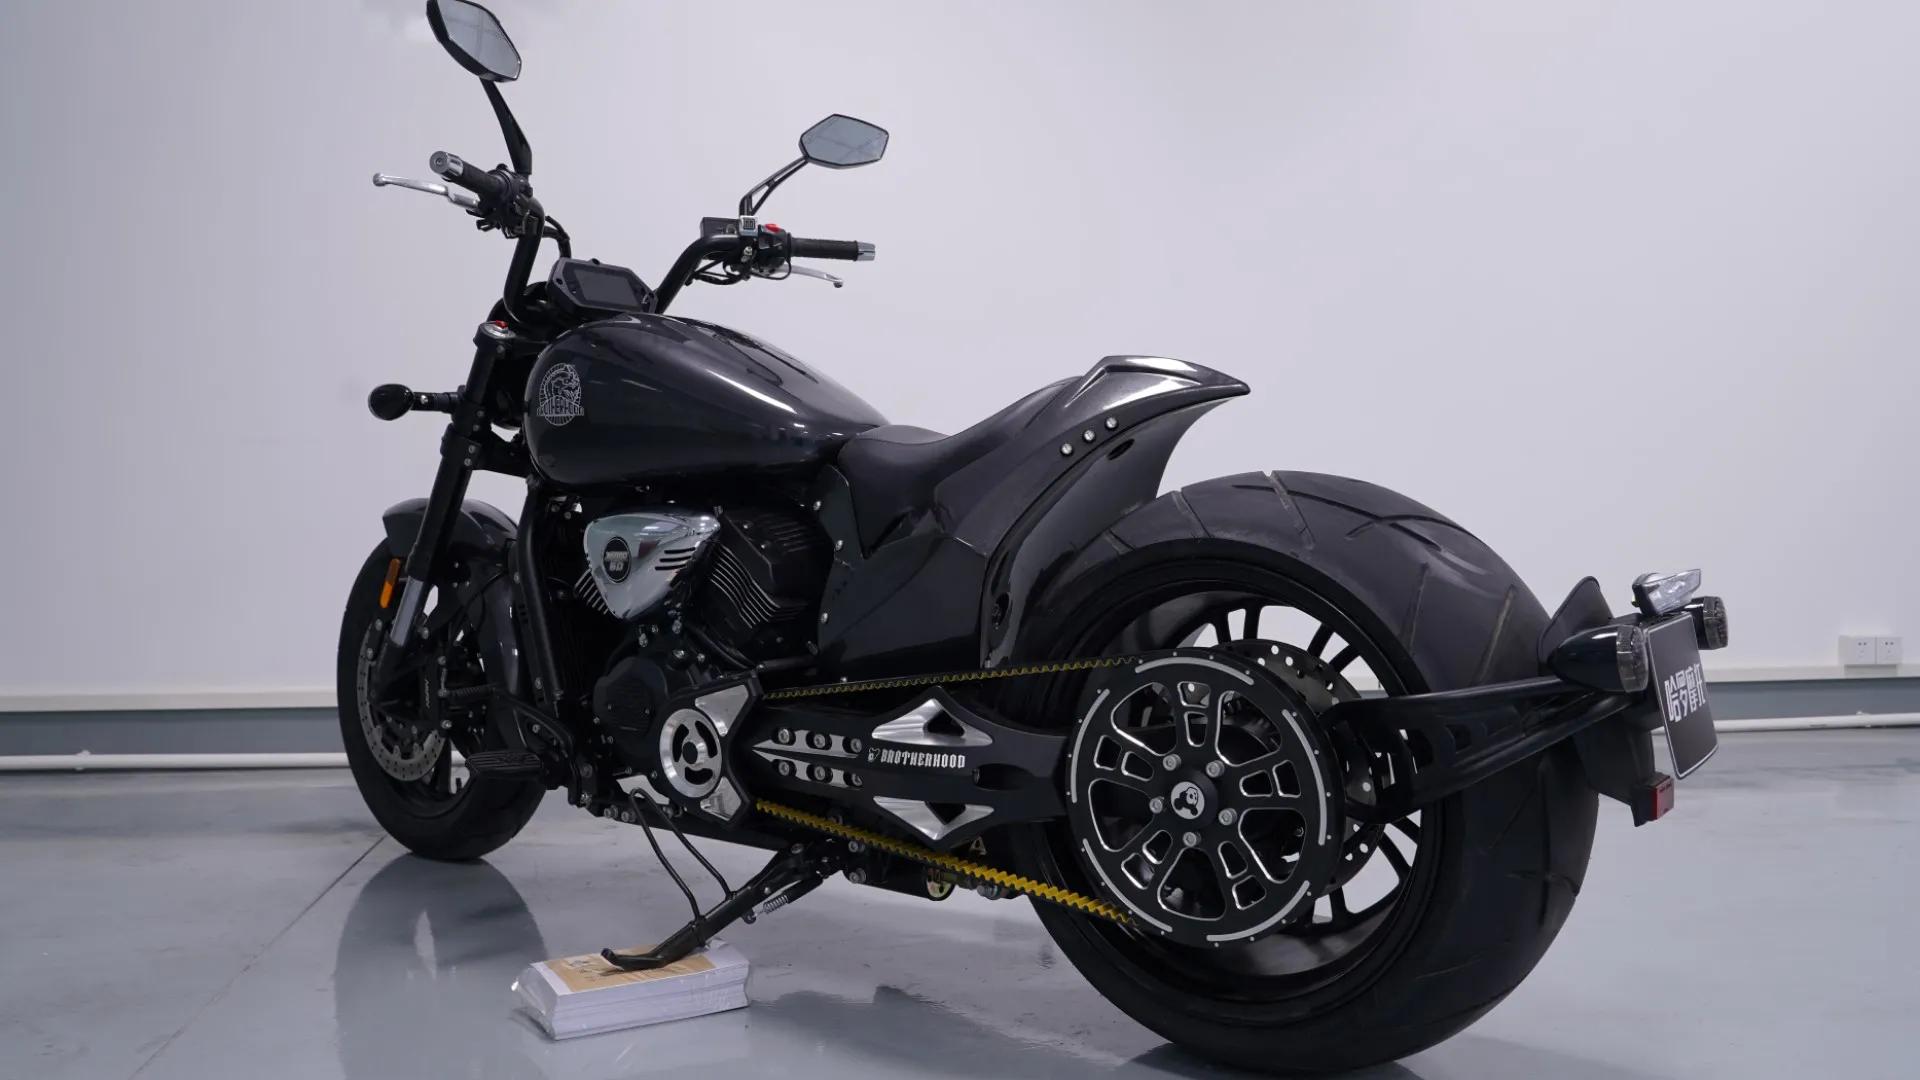 motos 110 con llantas anchas - Qué motocicleta tiene el neumático trasero más ancho